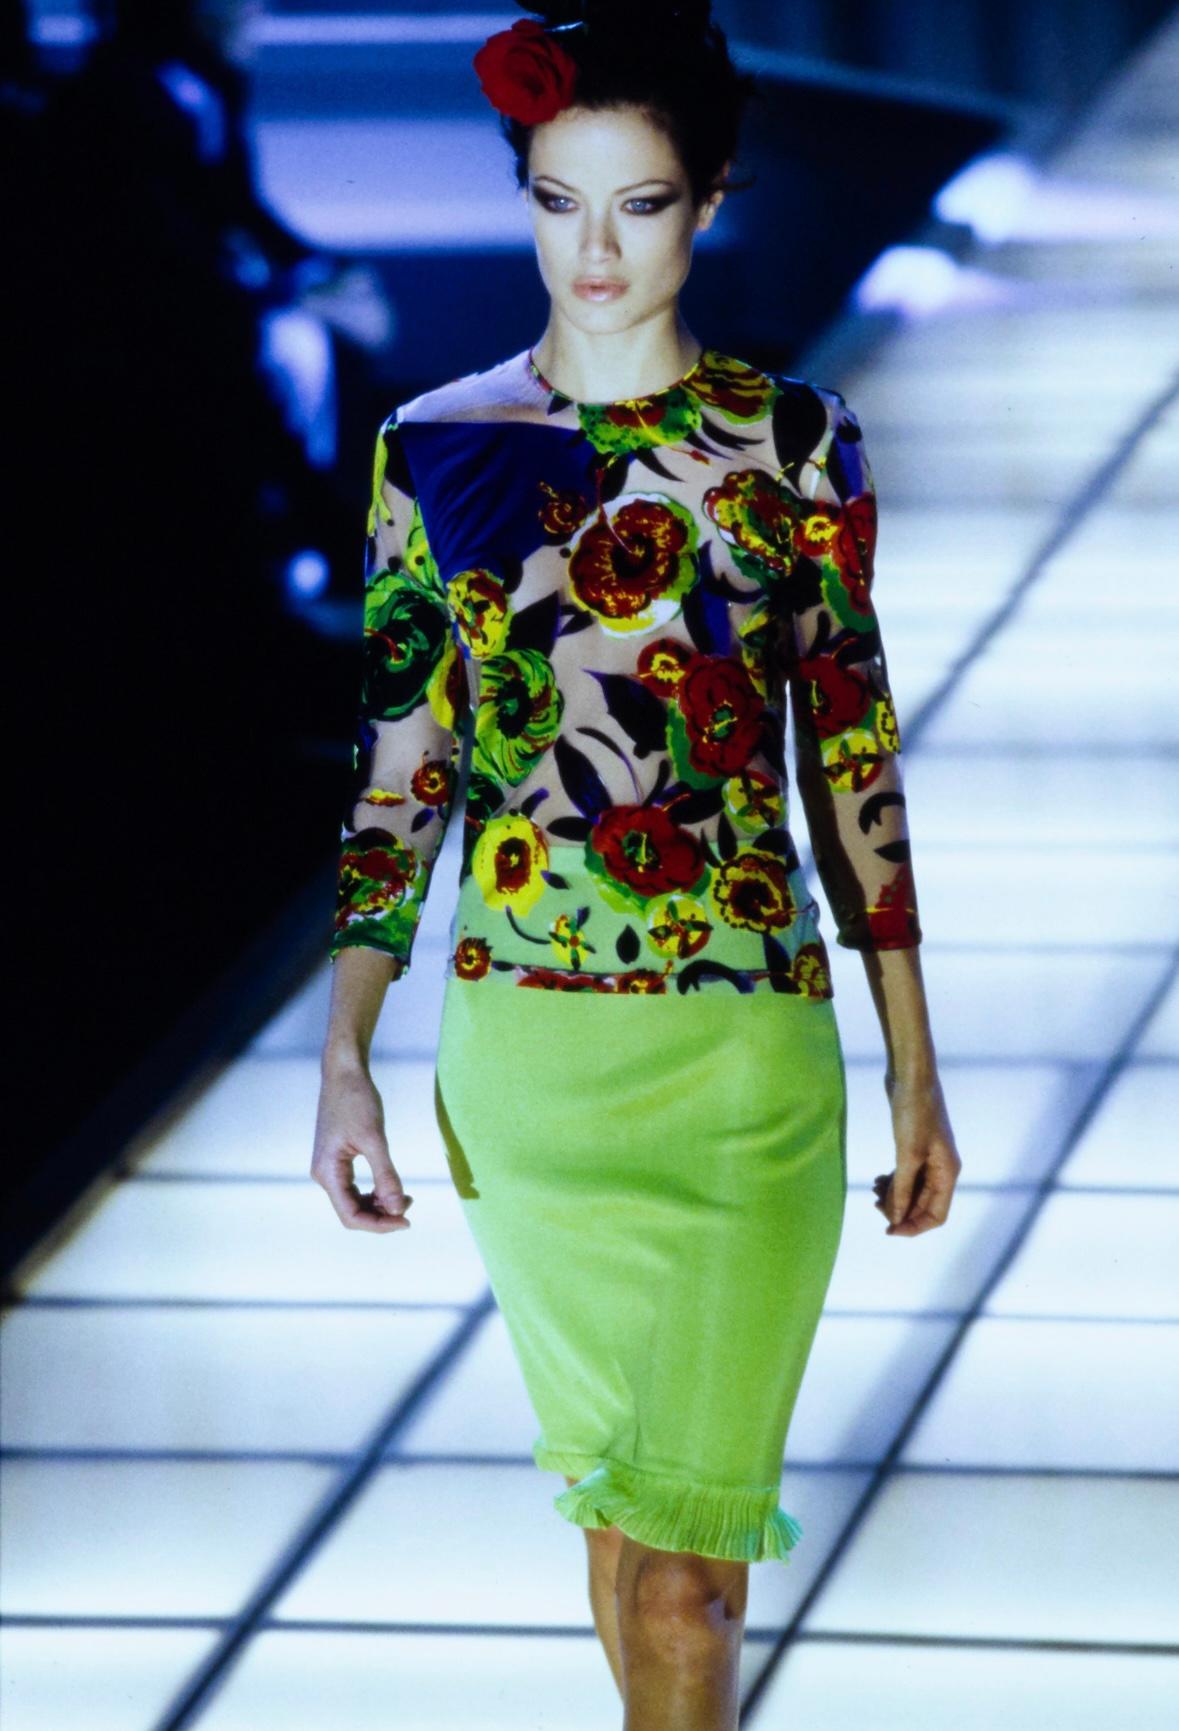 Wir präsentieren ein fabelhaftes Gianni Versace Hemd mit Blumenmuster, entworfen von Gianni Versace. Dieses Oberteil aus der Frühjahr/Sommer-Kollektion 1997 wurde erstmals auf dem Laufsteg als Teil des Looks 33 von Carolyn Murphy präsentiert. Dieses